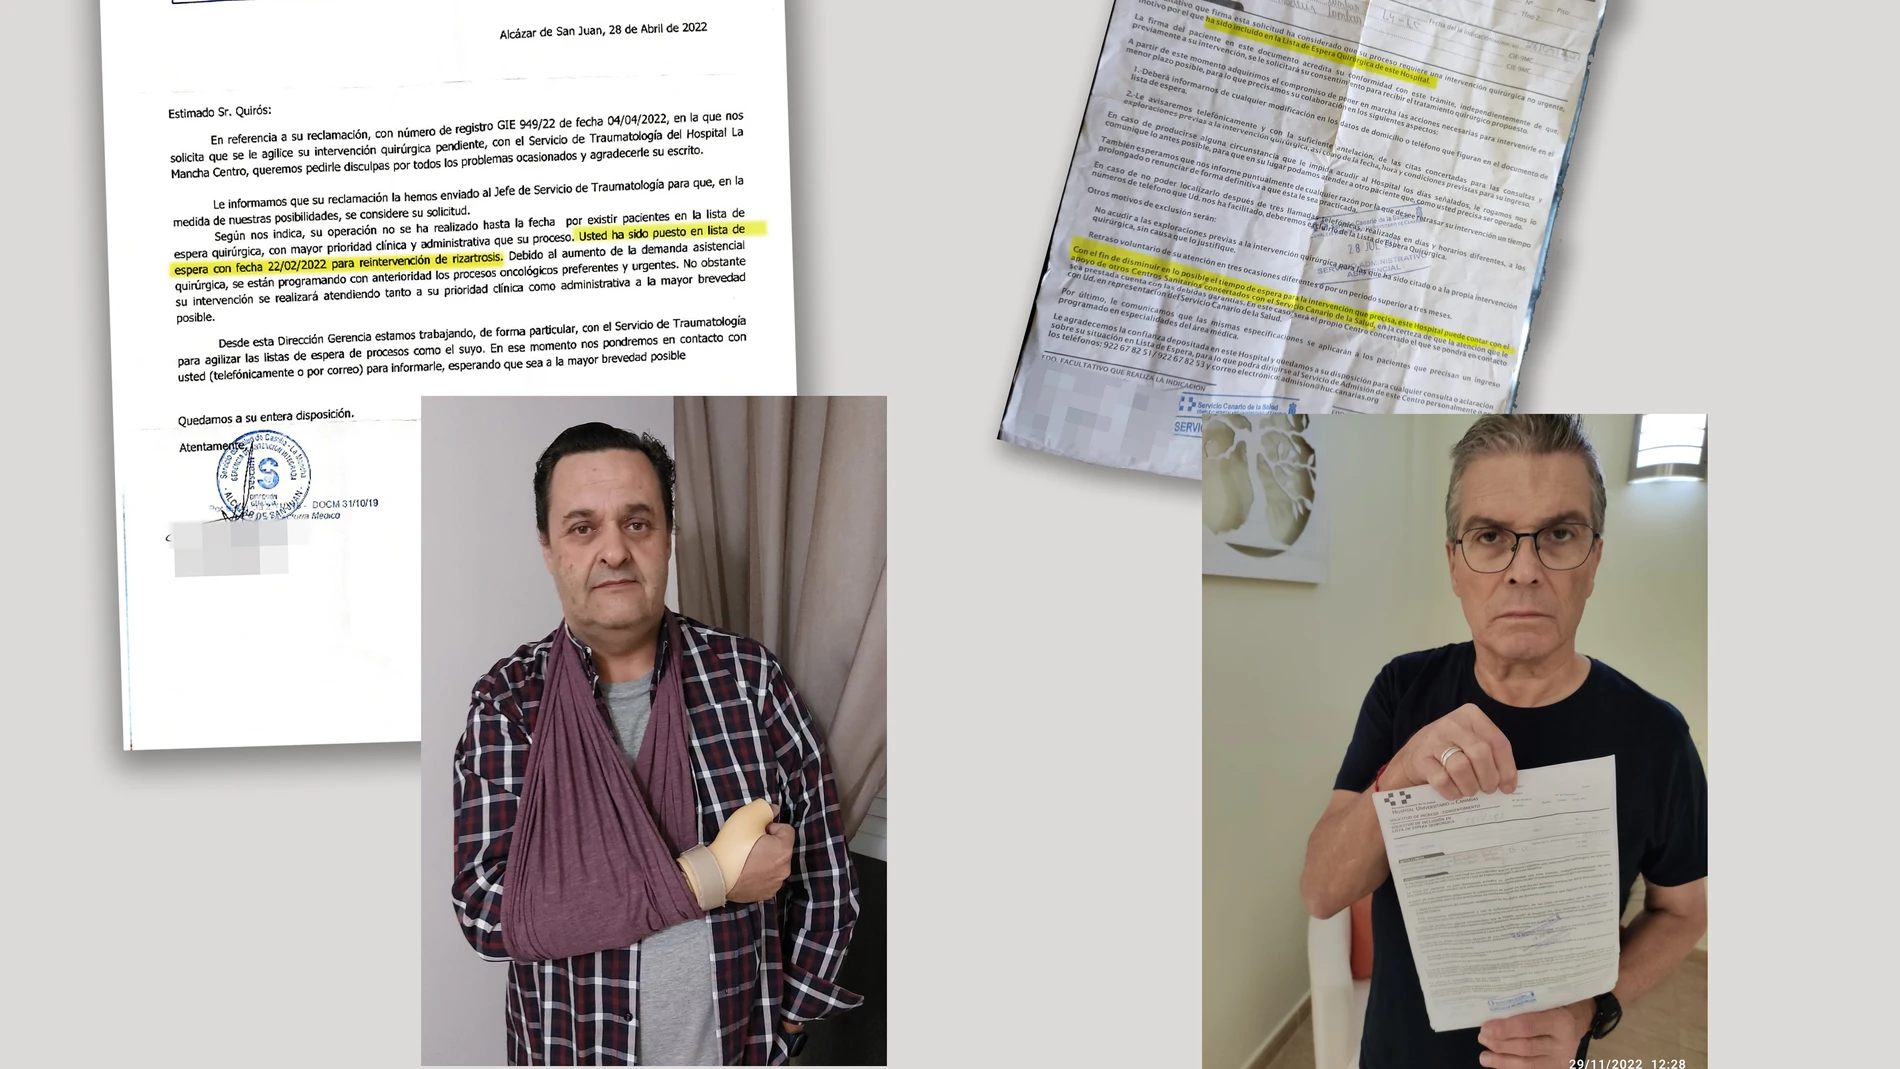 El manchego Francisco Javier Quirós y el tinerfeño Juan Ramón González muestran a LA RAZÓN los documentos donde se fecha su entrada en la lista de espera quirúrgica